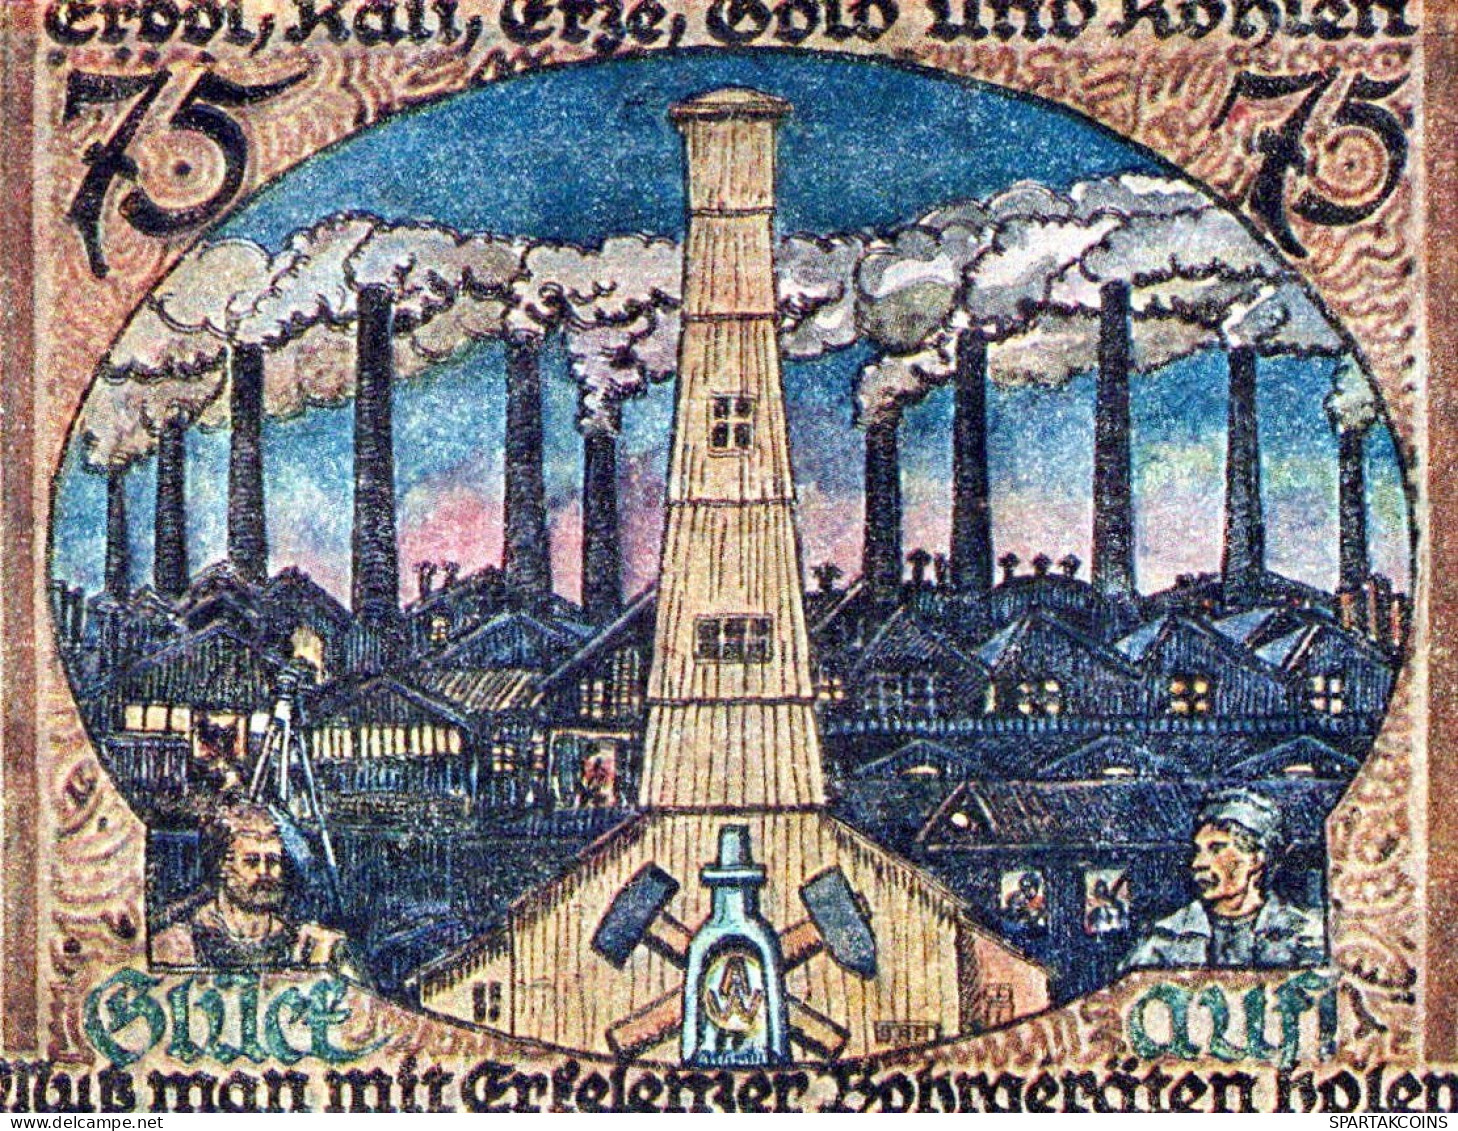 75 PFENNIG 1921 Stadt ERKELENZ Rhine UNC DEUTSCHLAND Notgeld Banknote #PB331 - [11] Emissions Locales